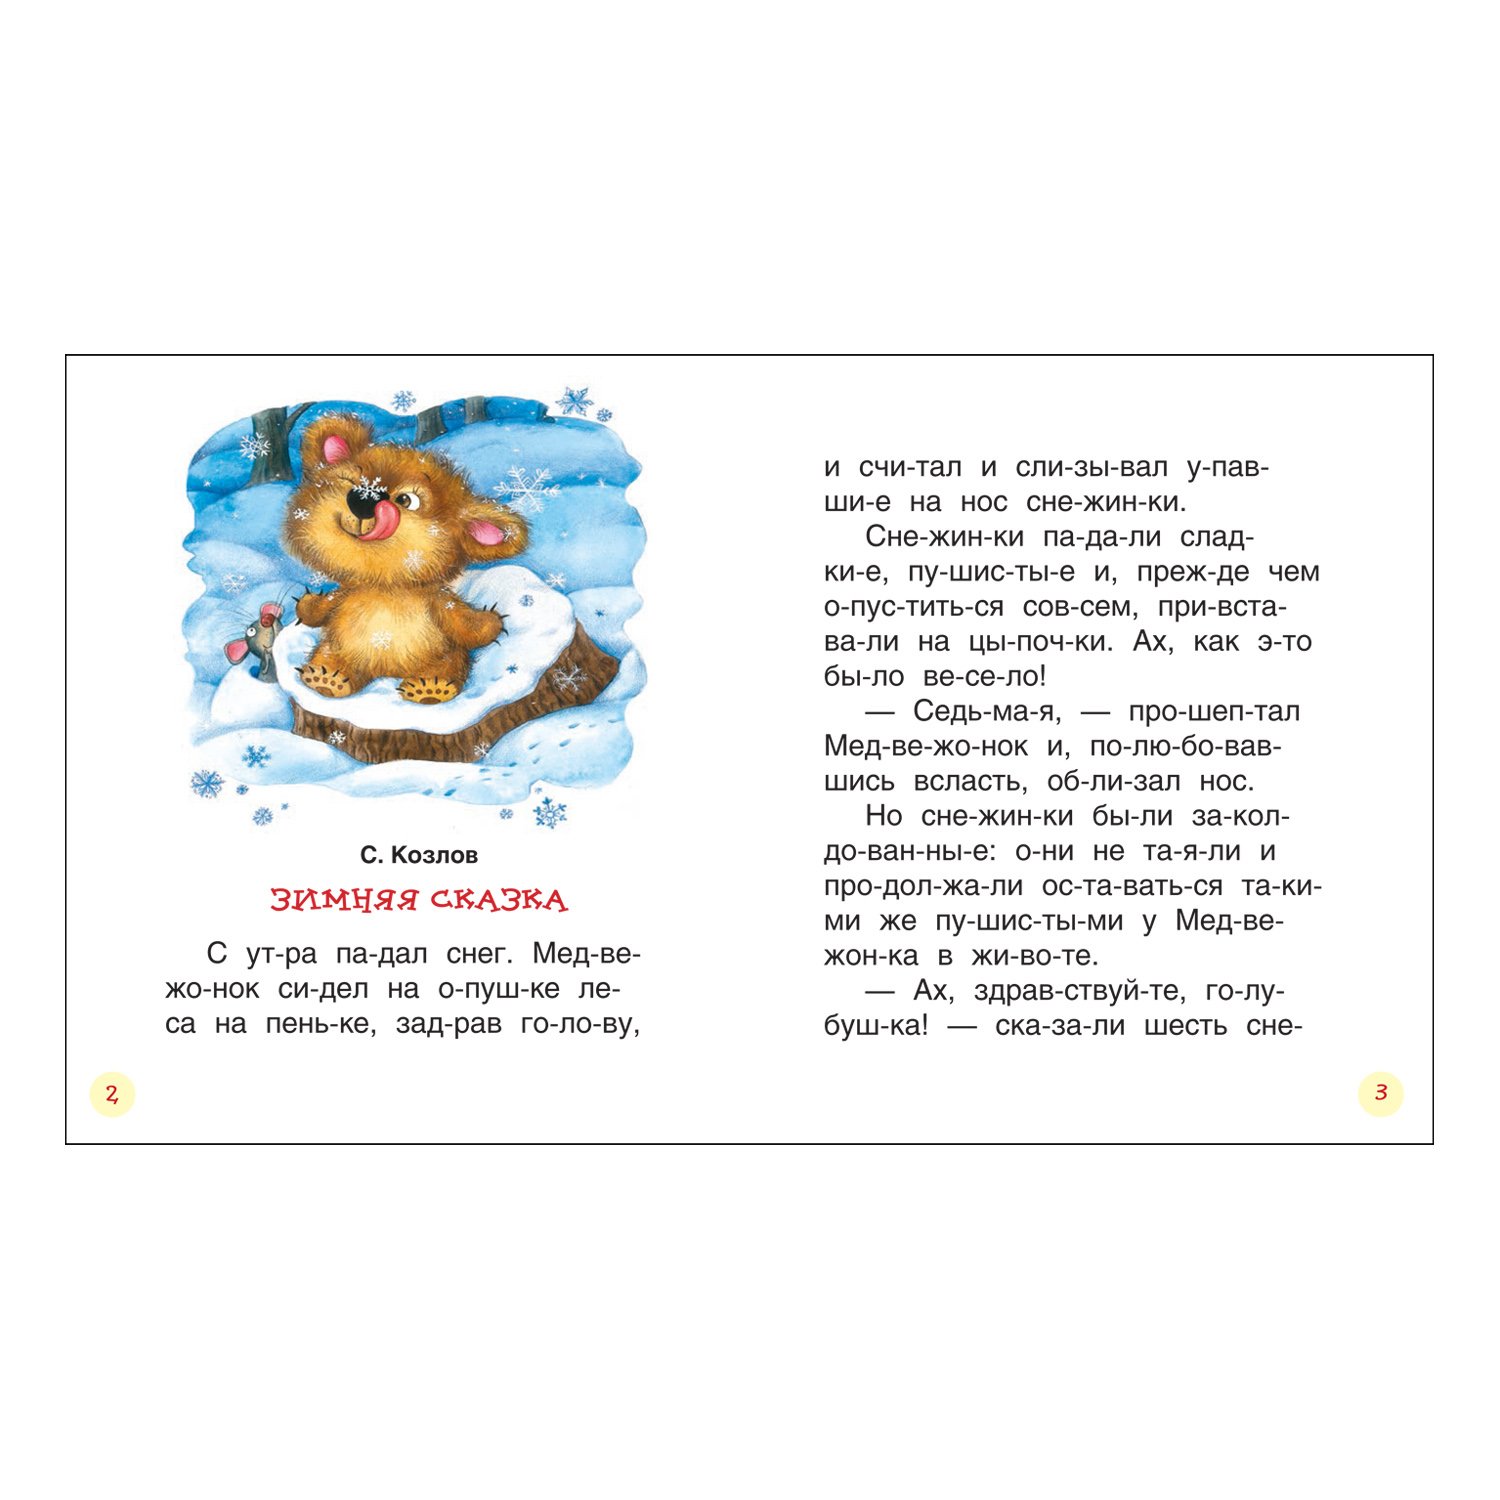 Сказки с картинками для детей читать онлайн и бесплатно на сайте витамин-п-байкальский.рф